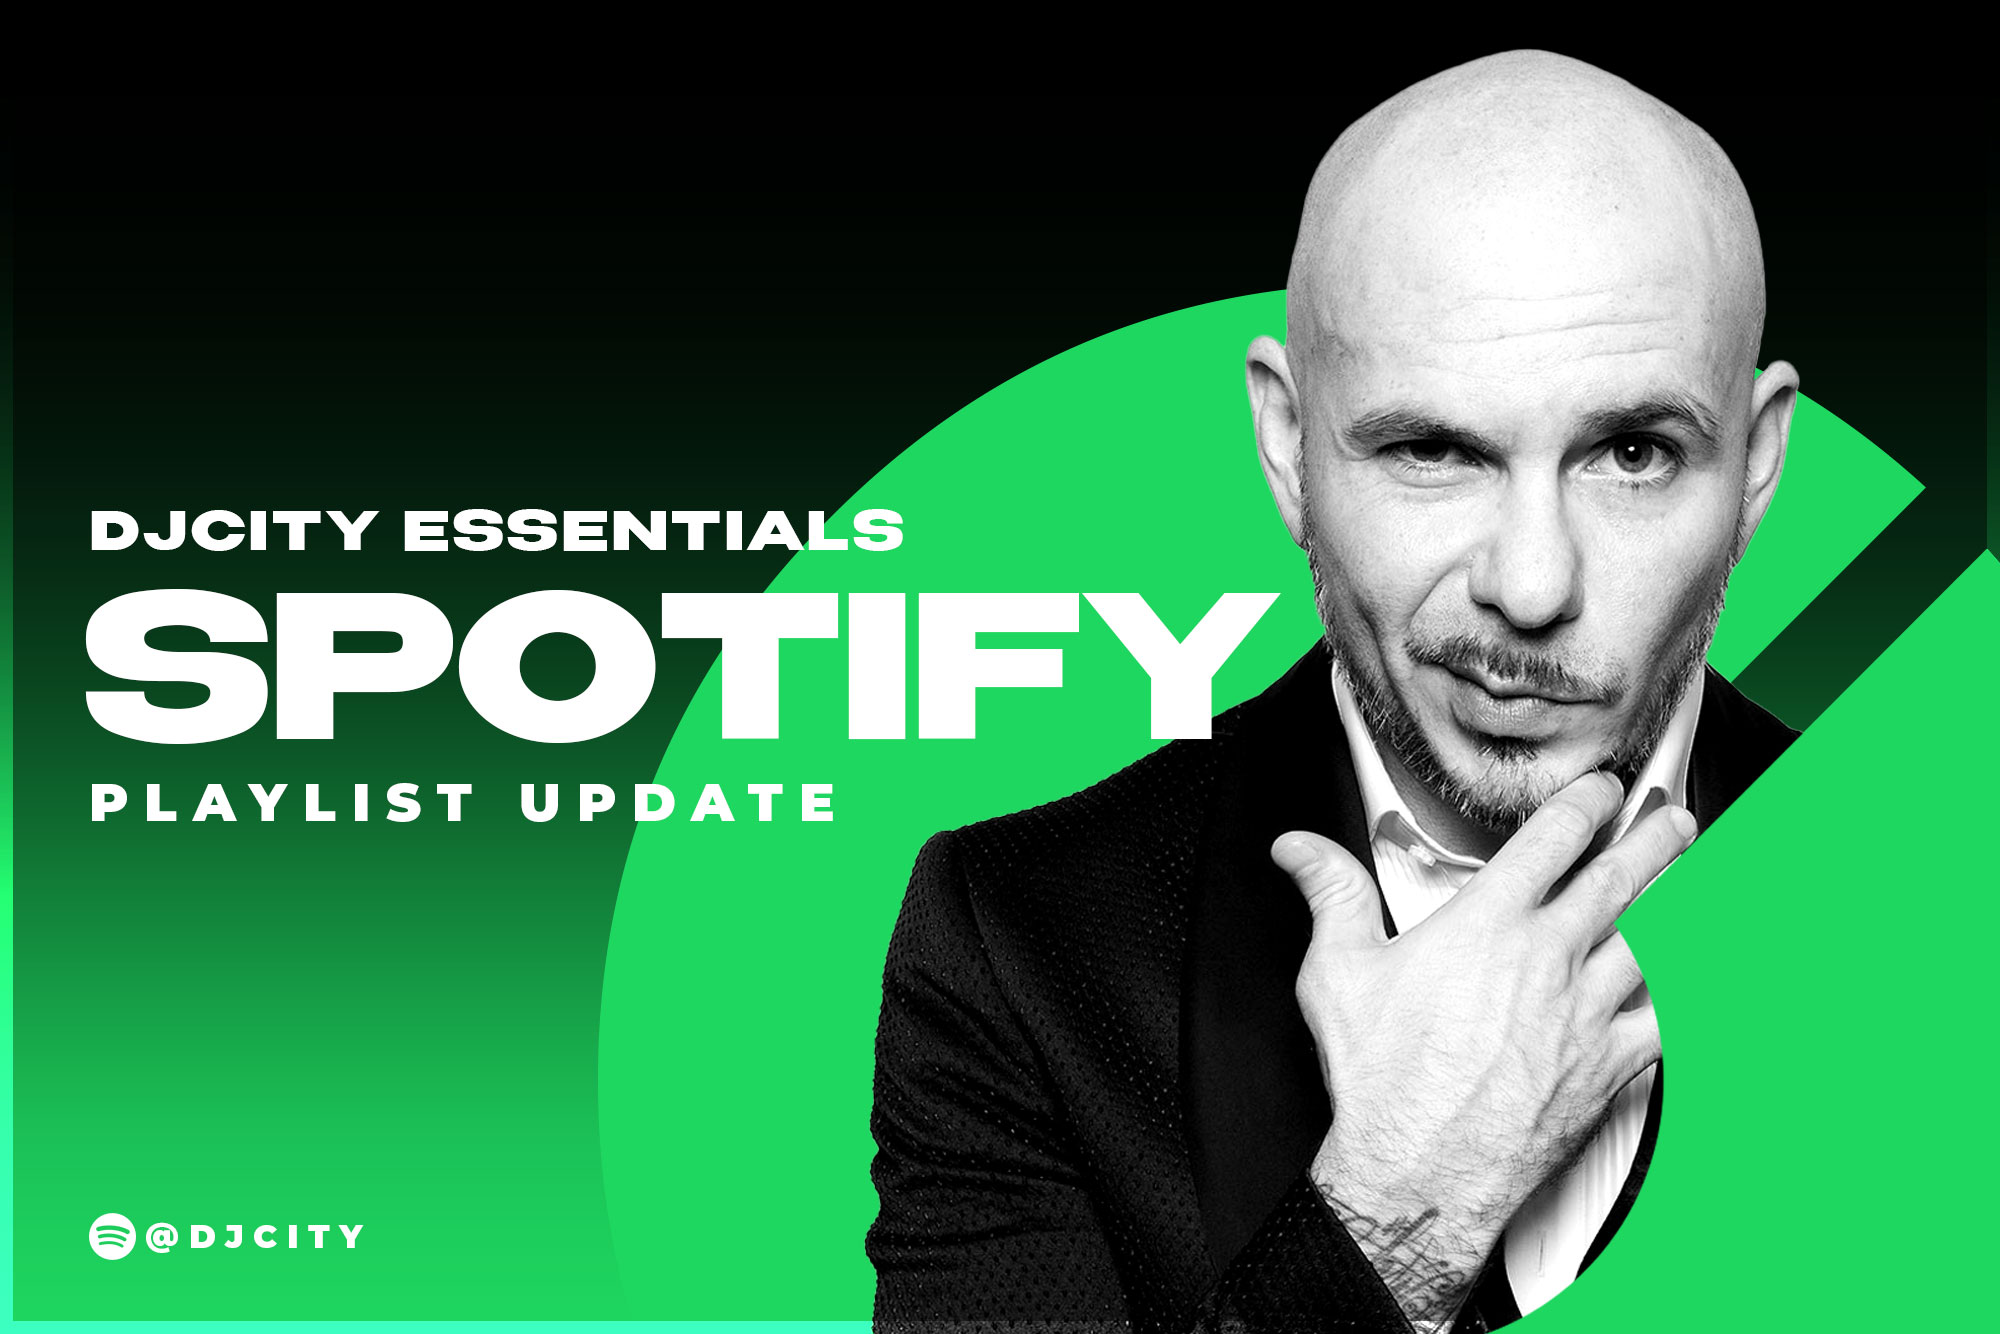 DJcity’s Spotify Playlist Update: Aug. 24